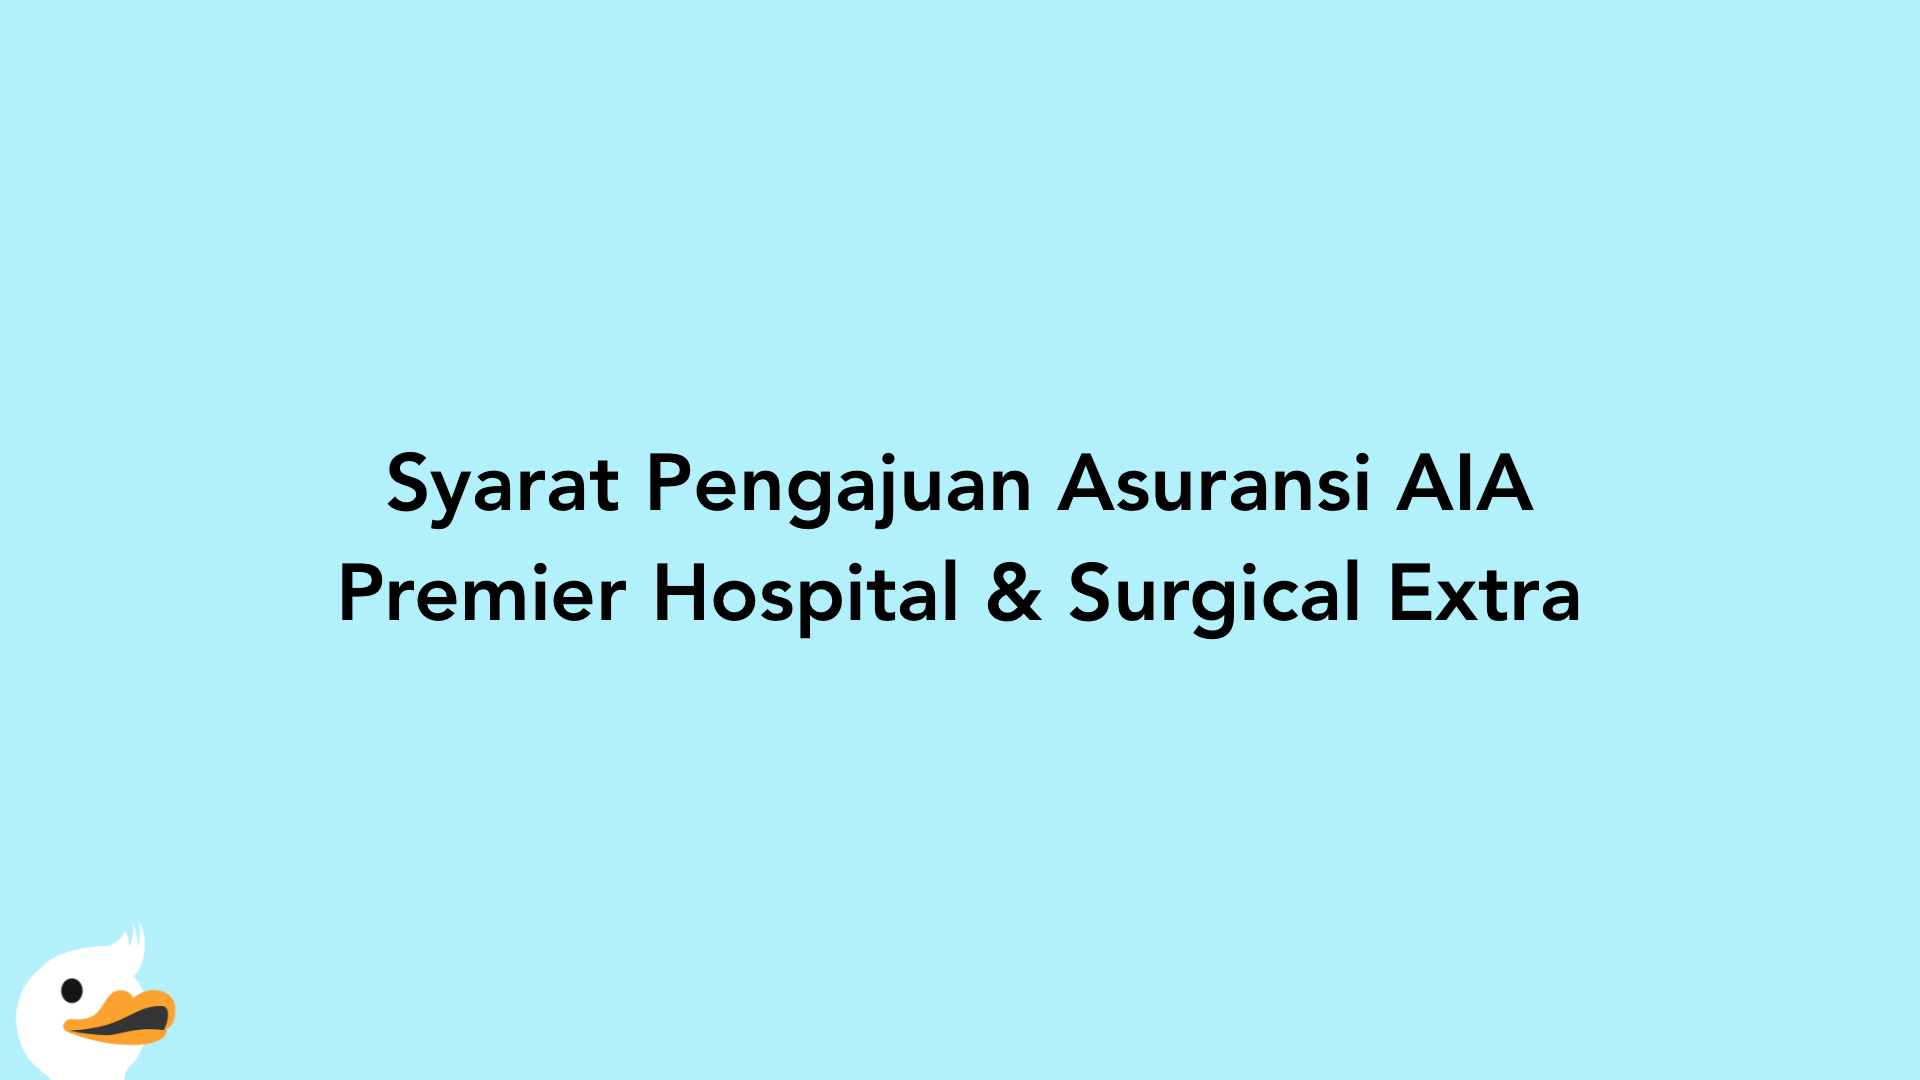 Syarat Pengajuan Asuransi AIA Premier Hospital & Surgical Extra